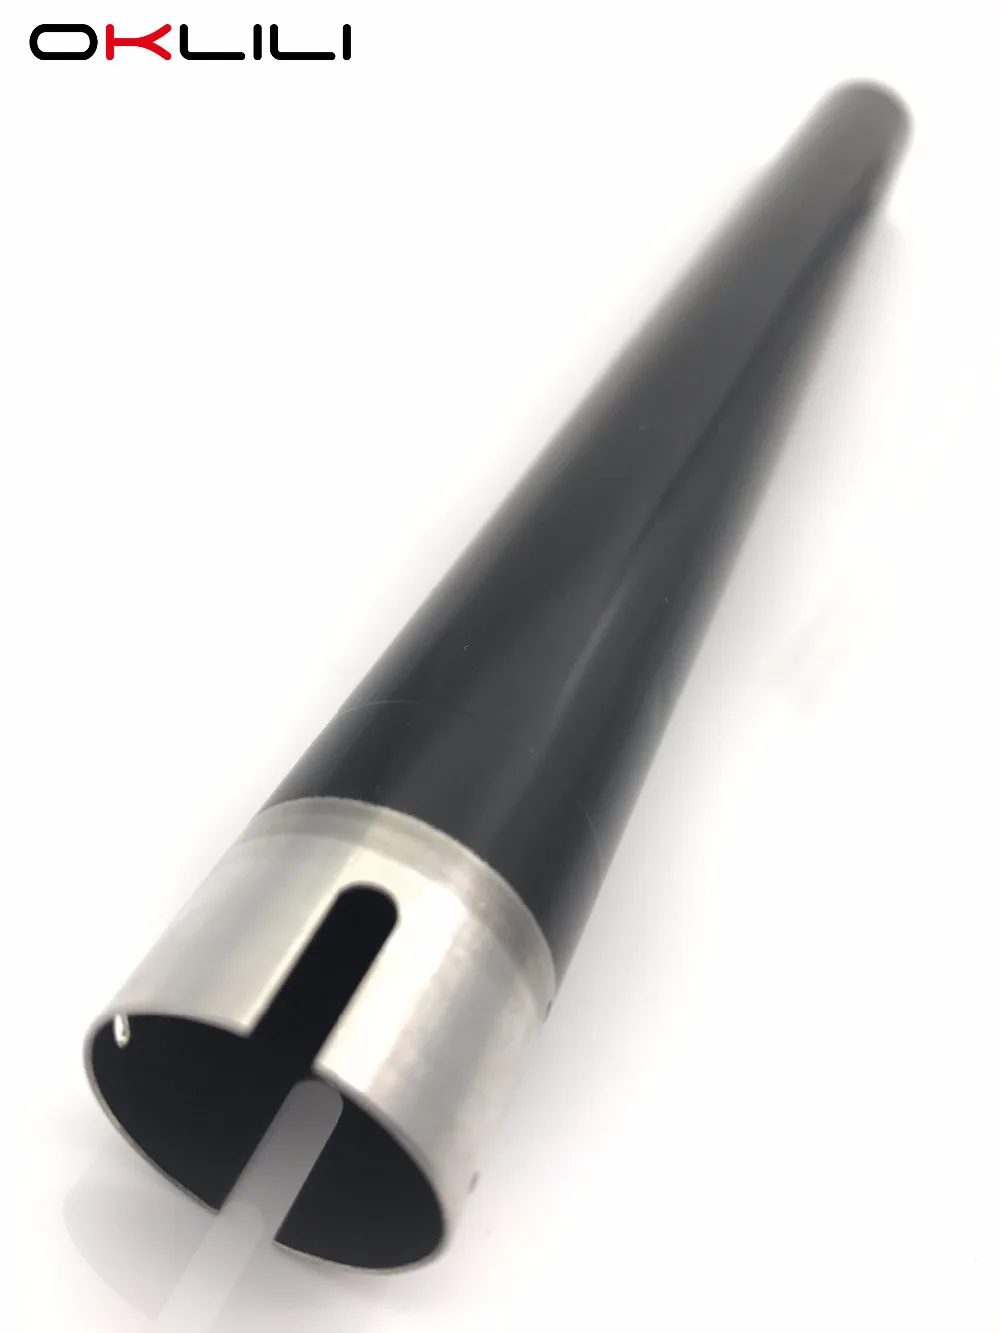 

1PC X COMPATIBLE NEW AE01-1131 AE011131 Upper Fuser Hot Heat Roller for Ricoh Aficio MP 301 MP301 MP301SP MP301SPF